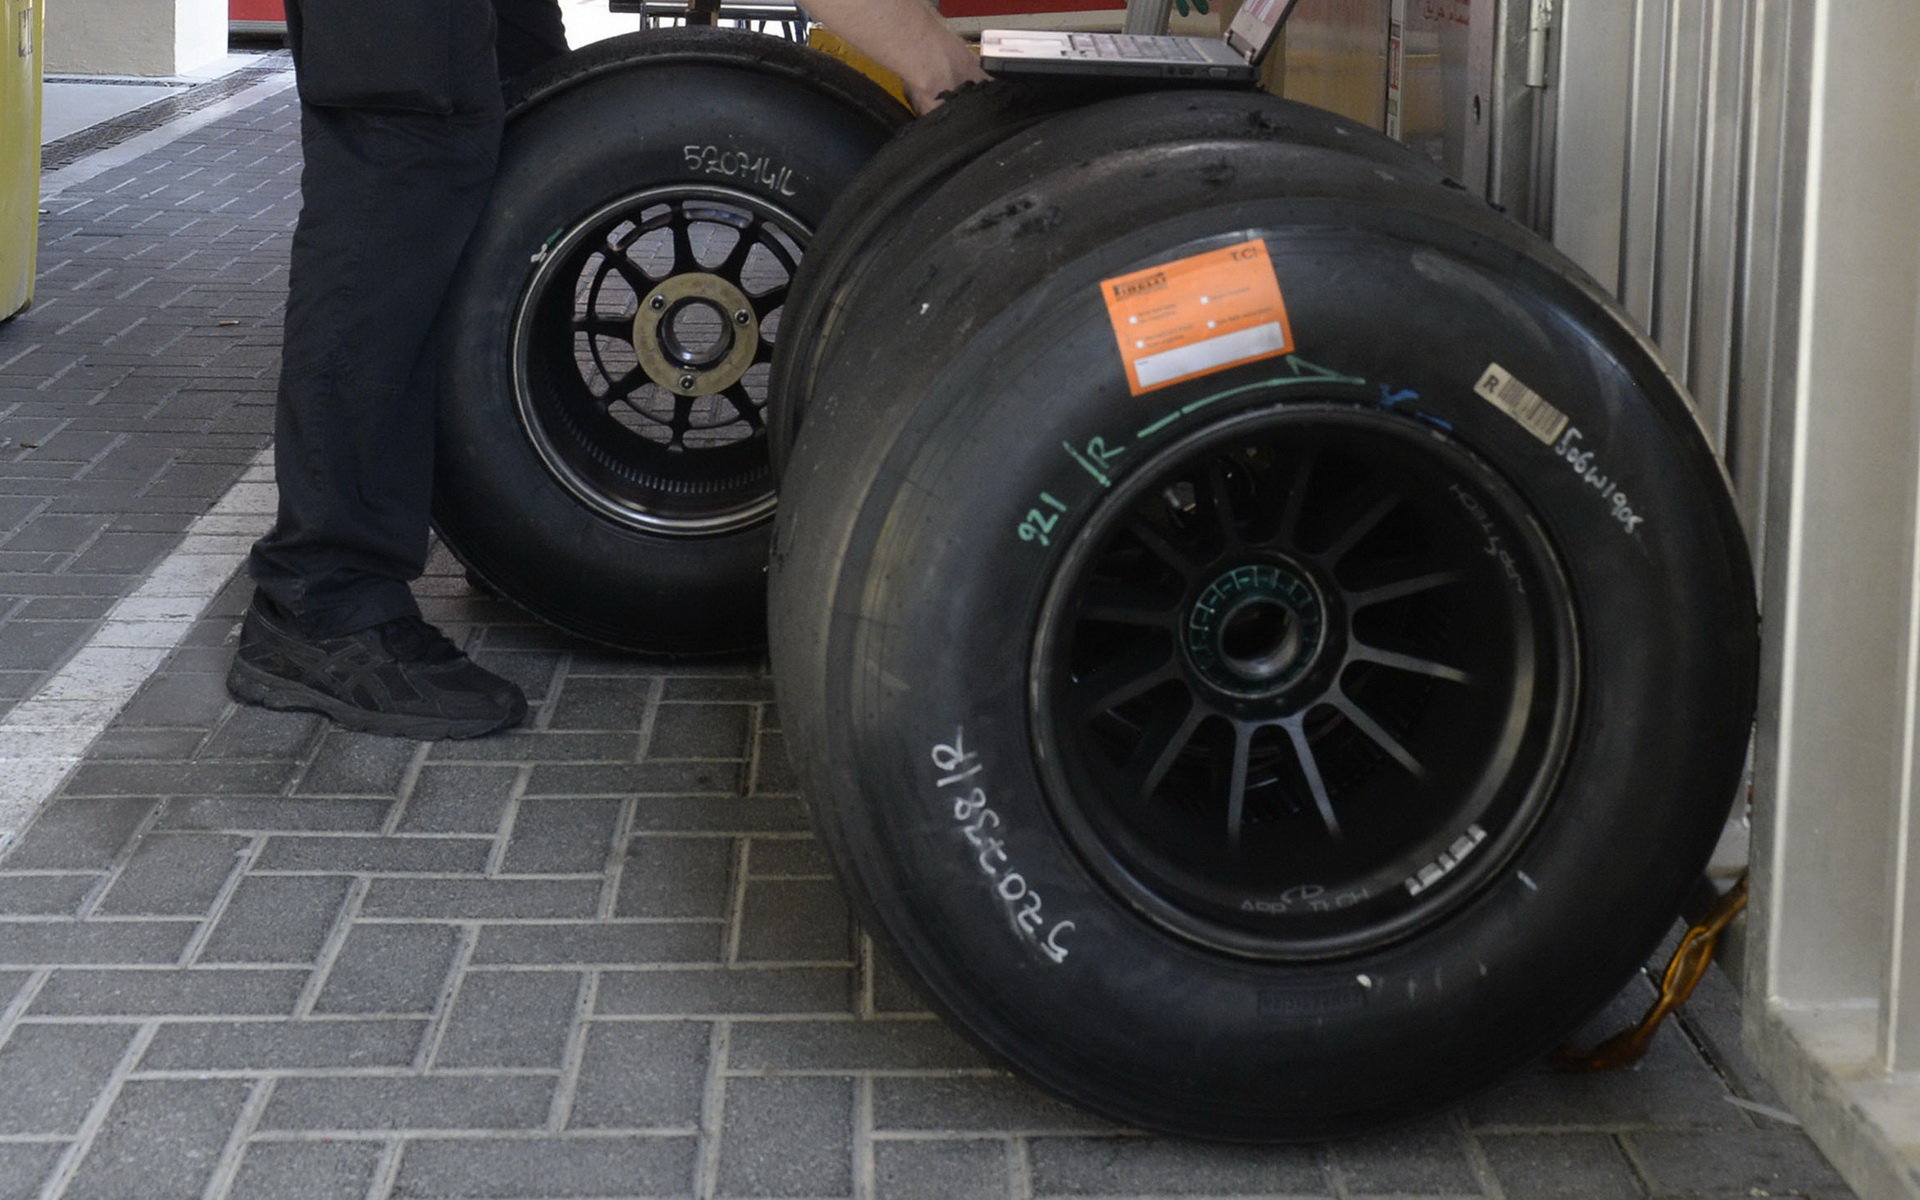 Pneumatiky při Pirelli testech v Abú Zabí